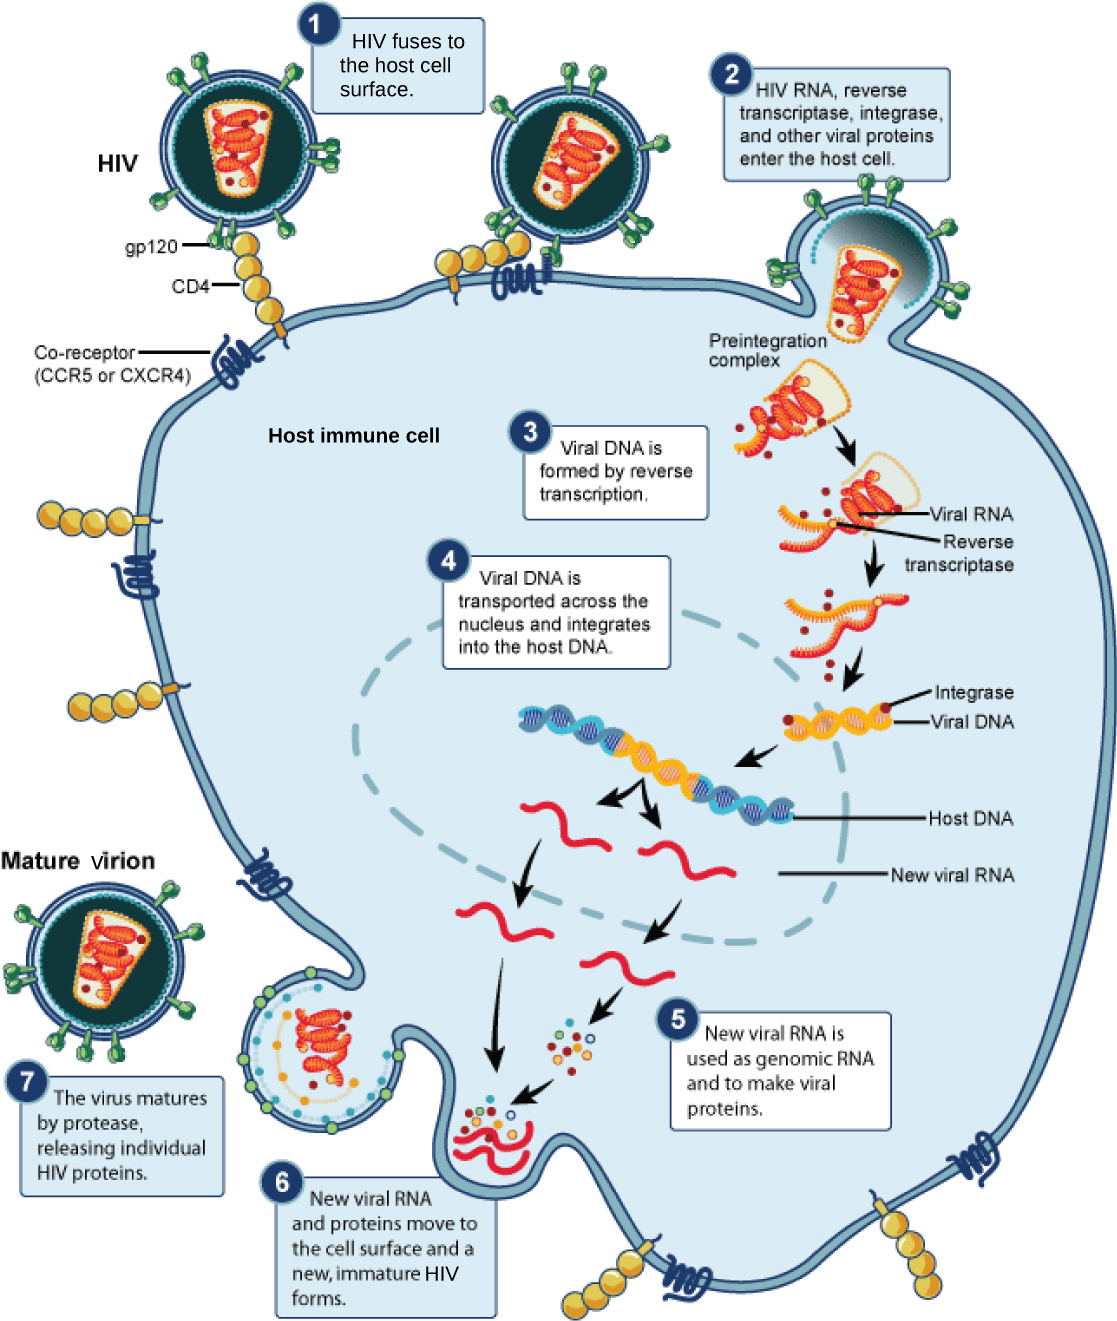 该插图显示了 HIV 生命周期中的各个步骤。 在步骤 1 中，病毒包膜中的 gp120 糖蛋白附着在宿主细胞膜上的 CD4 受体上。 然后，糖蛋白附着在共受体 CCR5 或 CXCR4 上，病毒包膜与细胞膜融合。 HIV RNA、逆转录酶和其他病毒蛋白被释放到宿主细胞中。 病毒 DNA 由 RNA 通过逆转录酶形成。 然后，病毒 DNA 被运送到核膜上，然后整合到宿主 DNA 中。 产生了新的病毒 RNA；它被用作基因组 RNA 和制造病毒蛋白。 新的病毒 RNA 和蛋白质移到细胞表面，形成新的未成熟的 HIV。 当蛋白酶释放出单个 HIV 蛋白质时，病毒就会成熟。